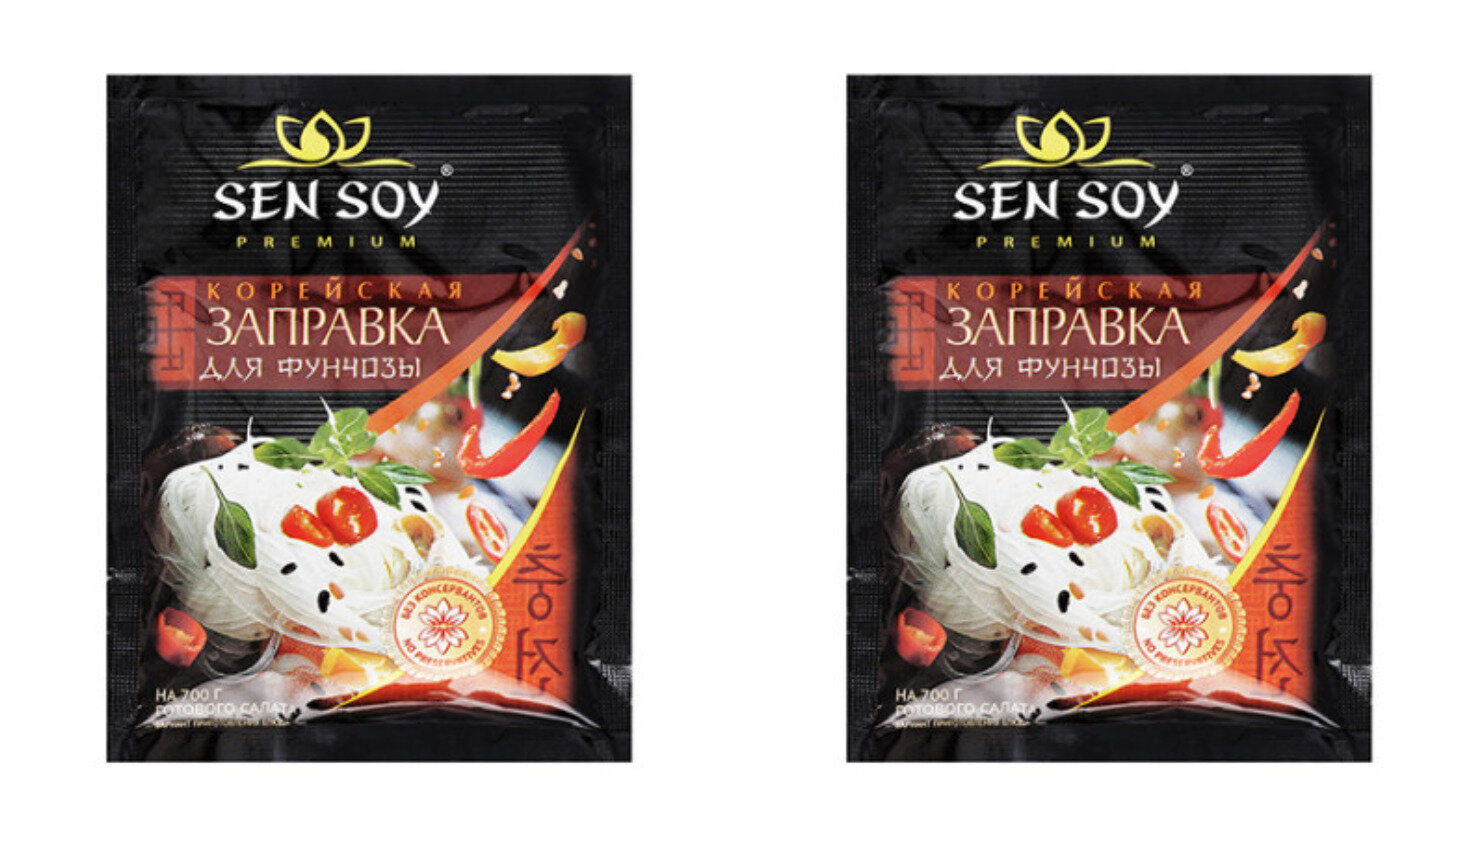 Sen Soy Заправка корейская для фунчезы, 80 г, 2 шт